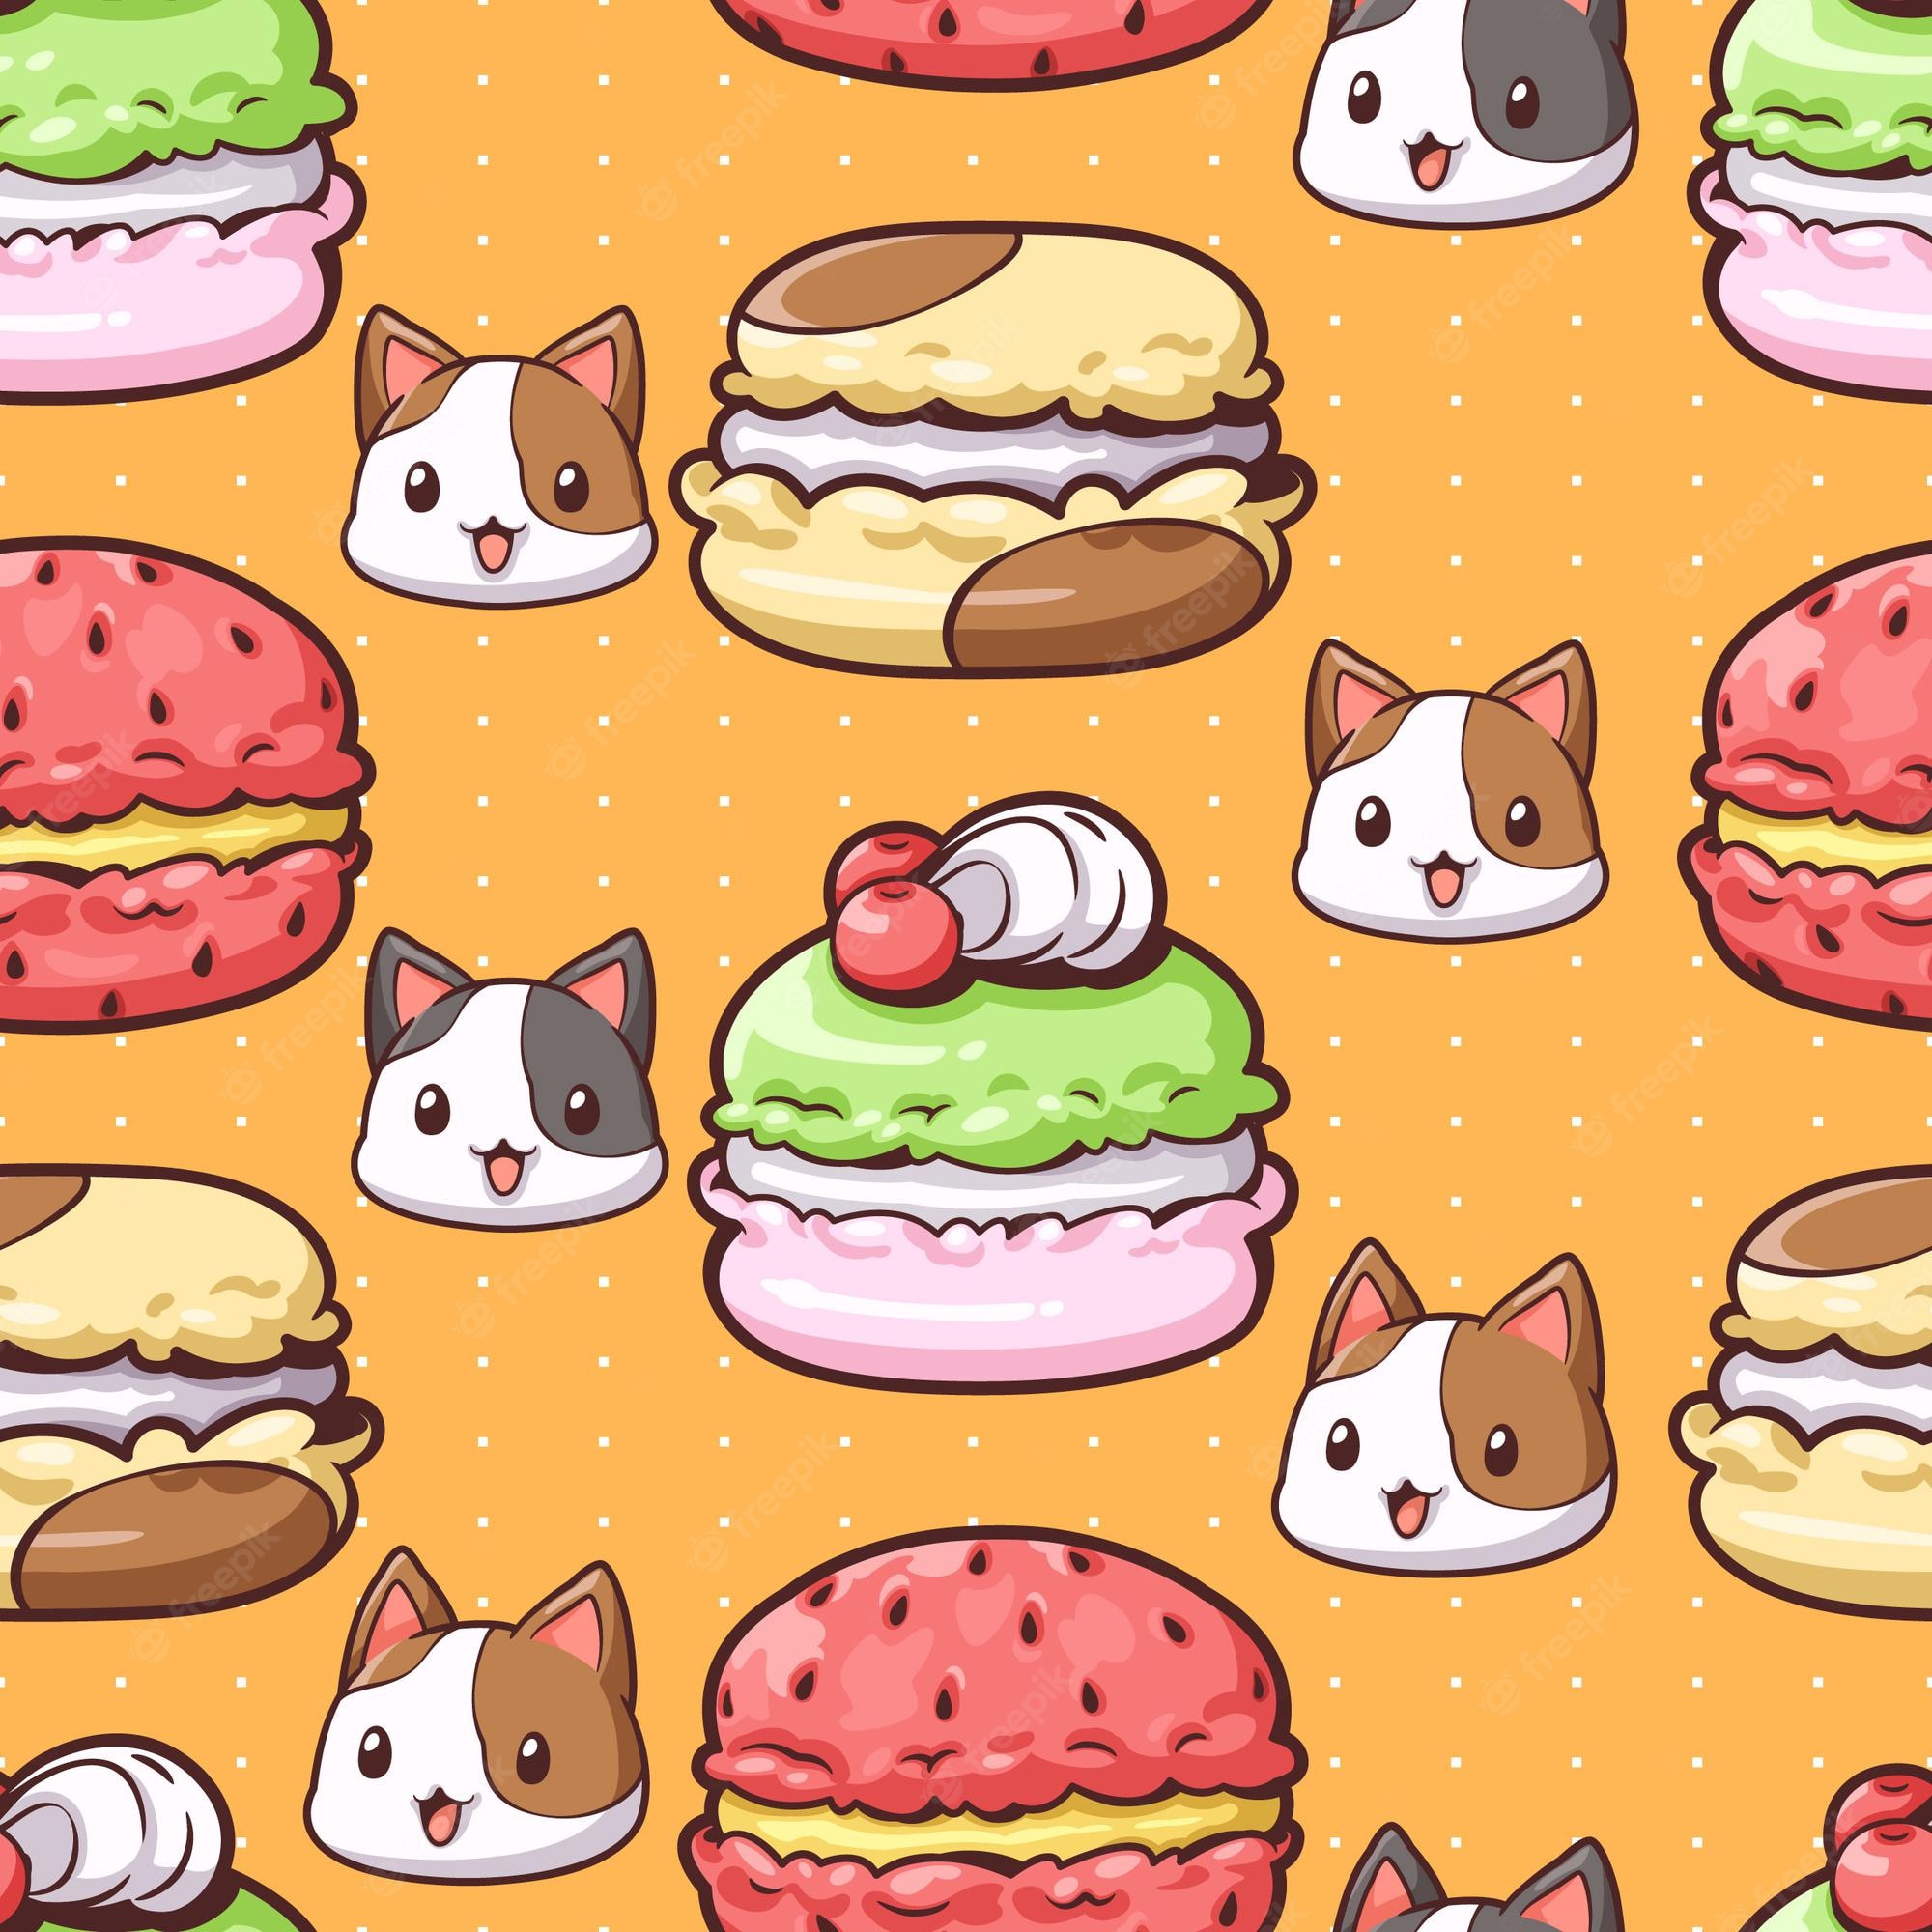 Cute Food Wallpaper Image